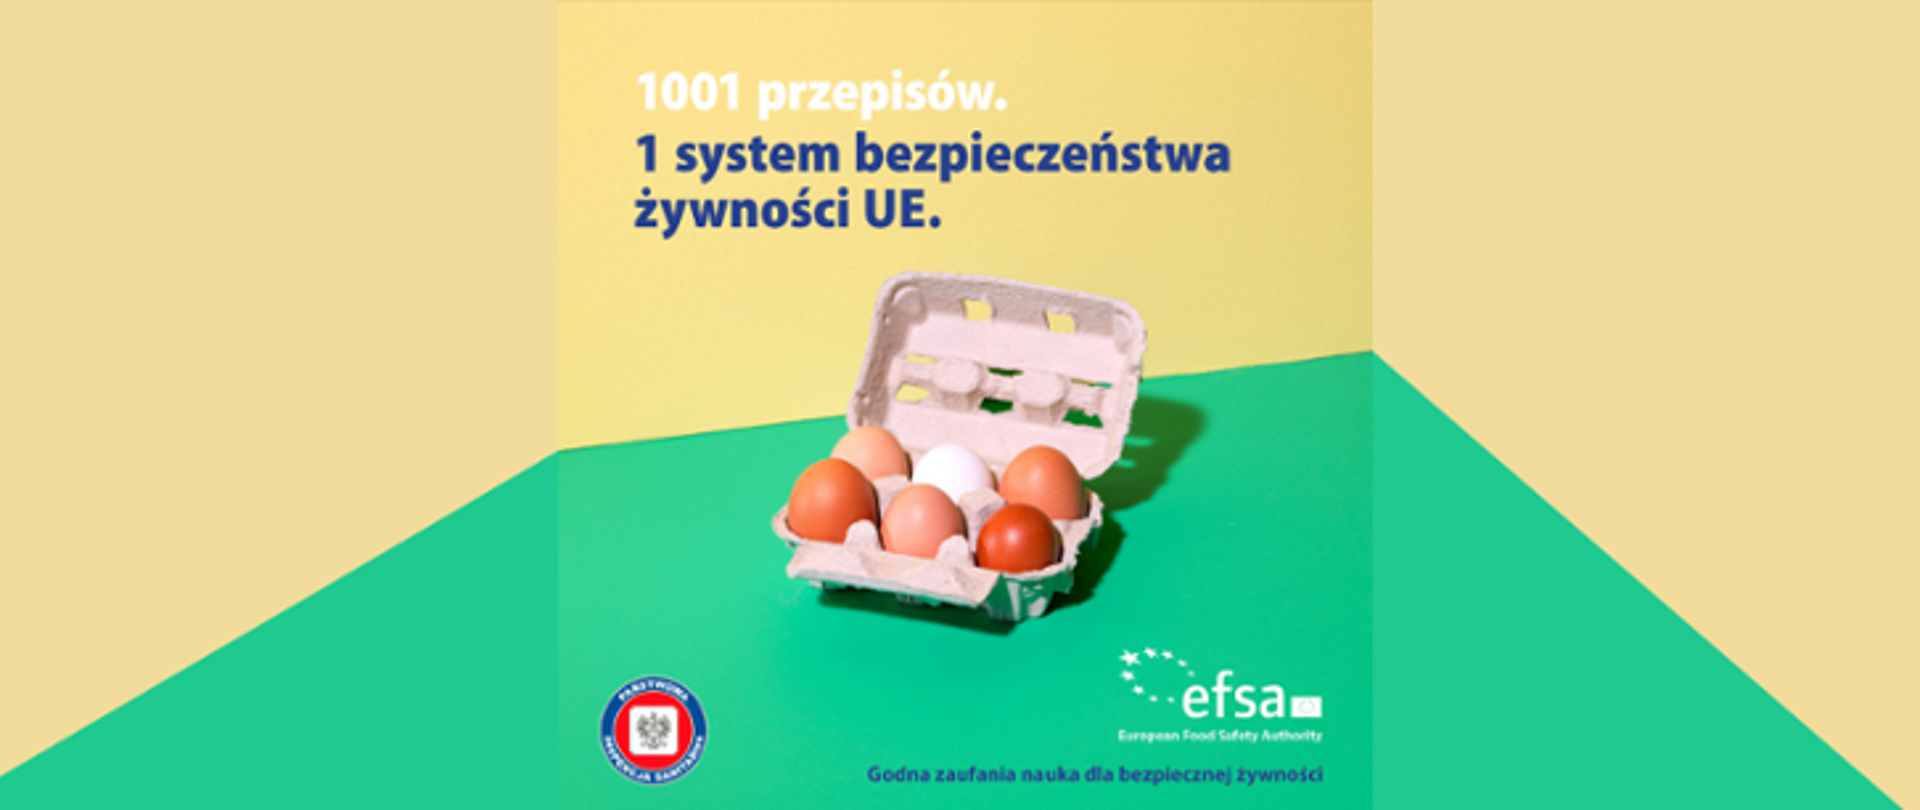 Grafika, na której widnieje napis: 1001 przepisów. 1 system bezpieczeństwa żywności UE. Poniżej znajduje się wytłaczanka wraz z jajami. Na samym dole widoczne jest logo Państwowej Inspekcji Sanitarnej oraz Europejskiego Urzędu ds. Bezpieczeństwa Żywności.